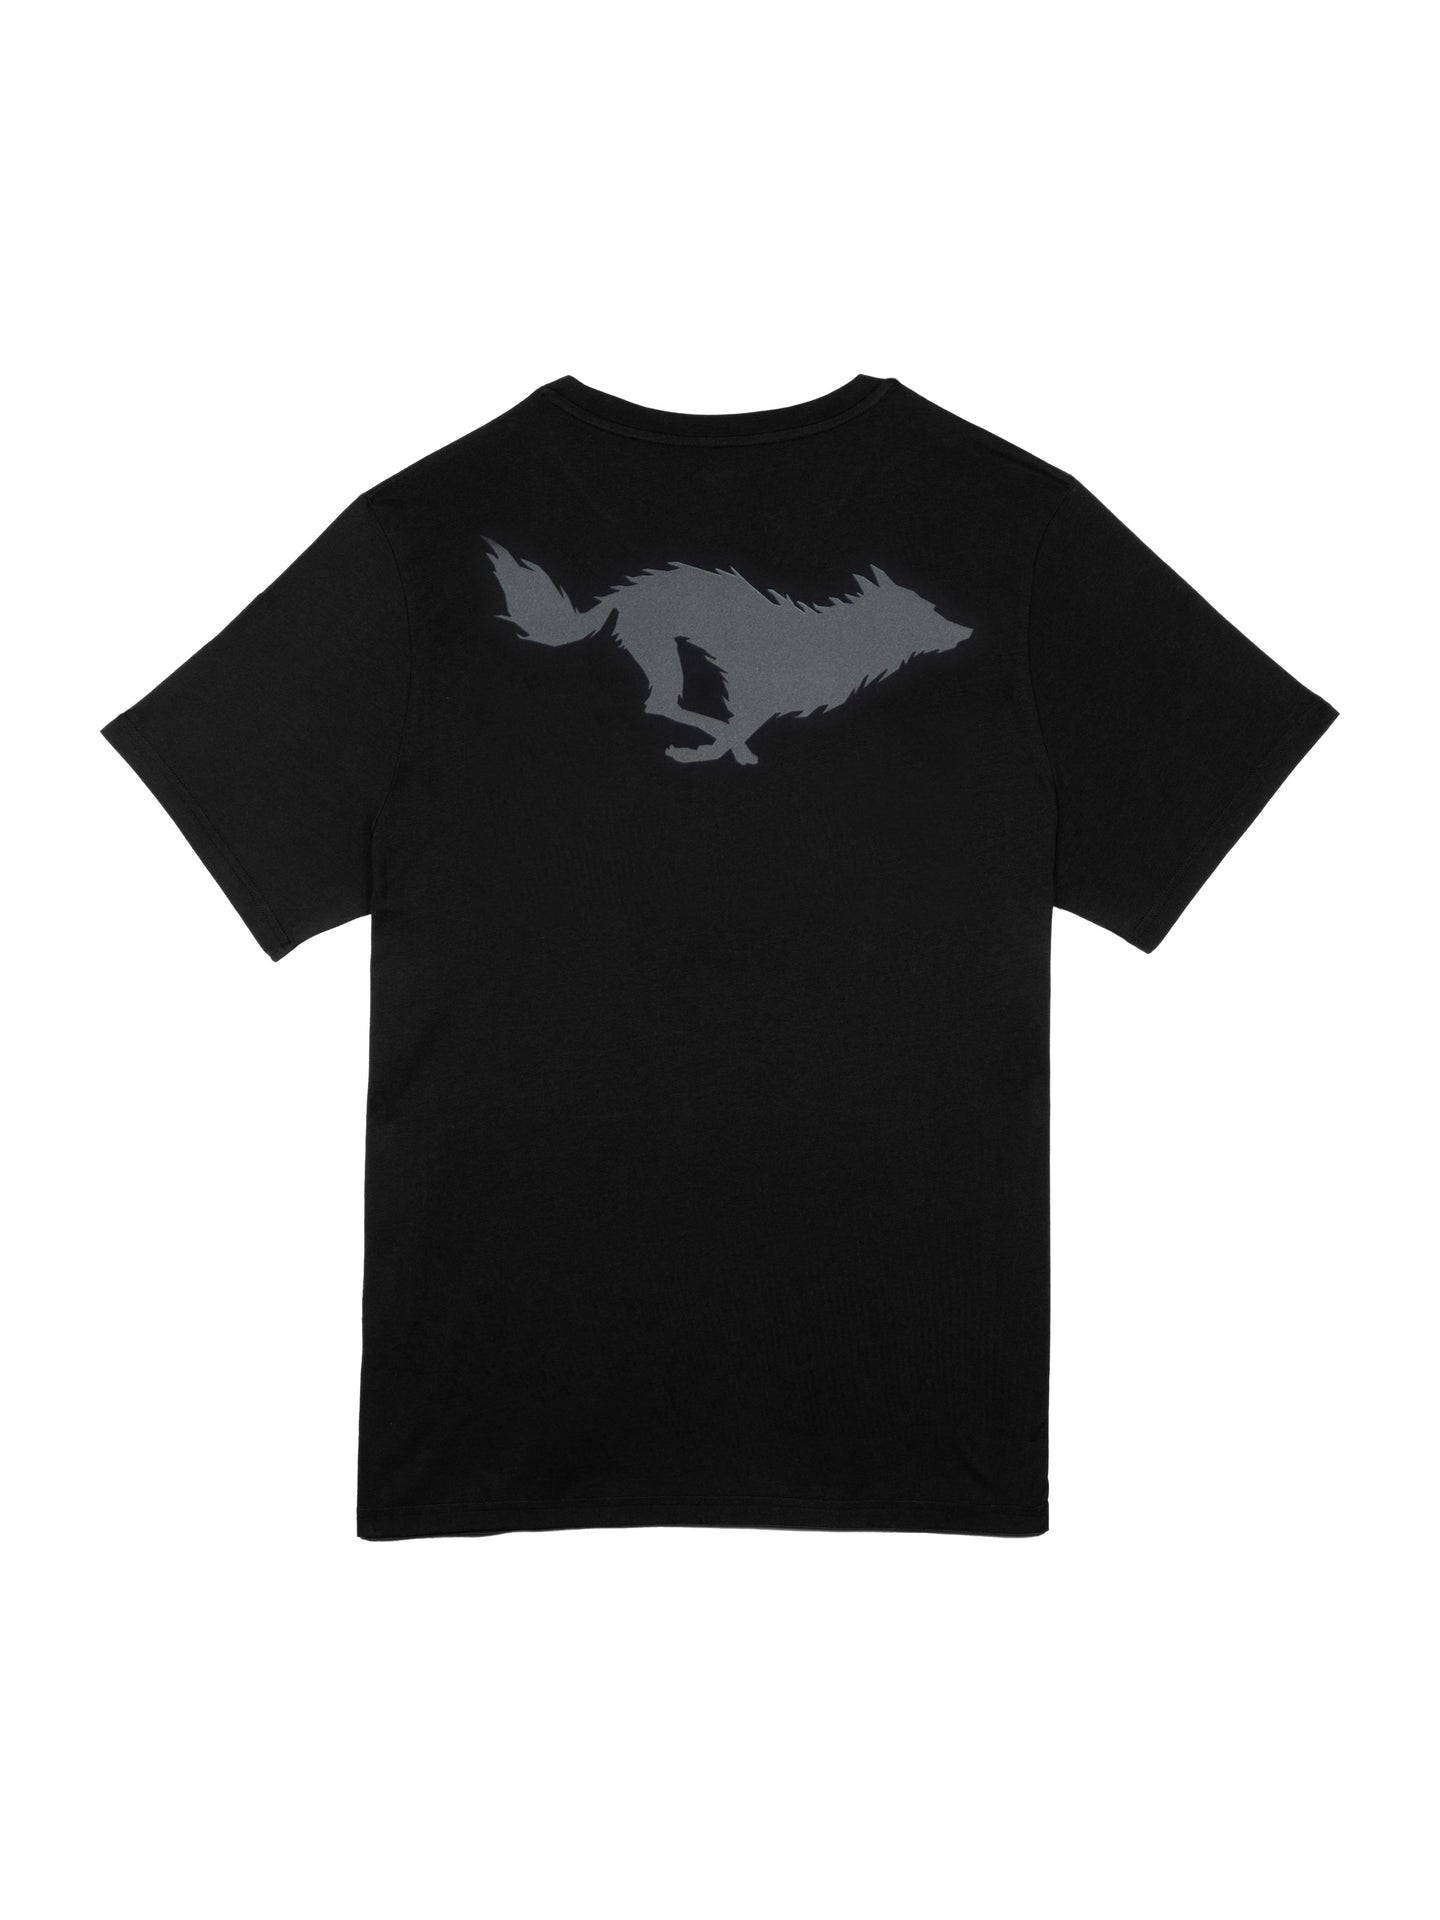 Lobo Black/Grey T-shirt